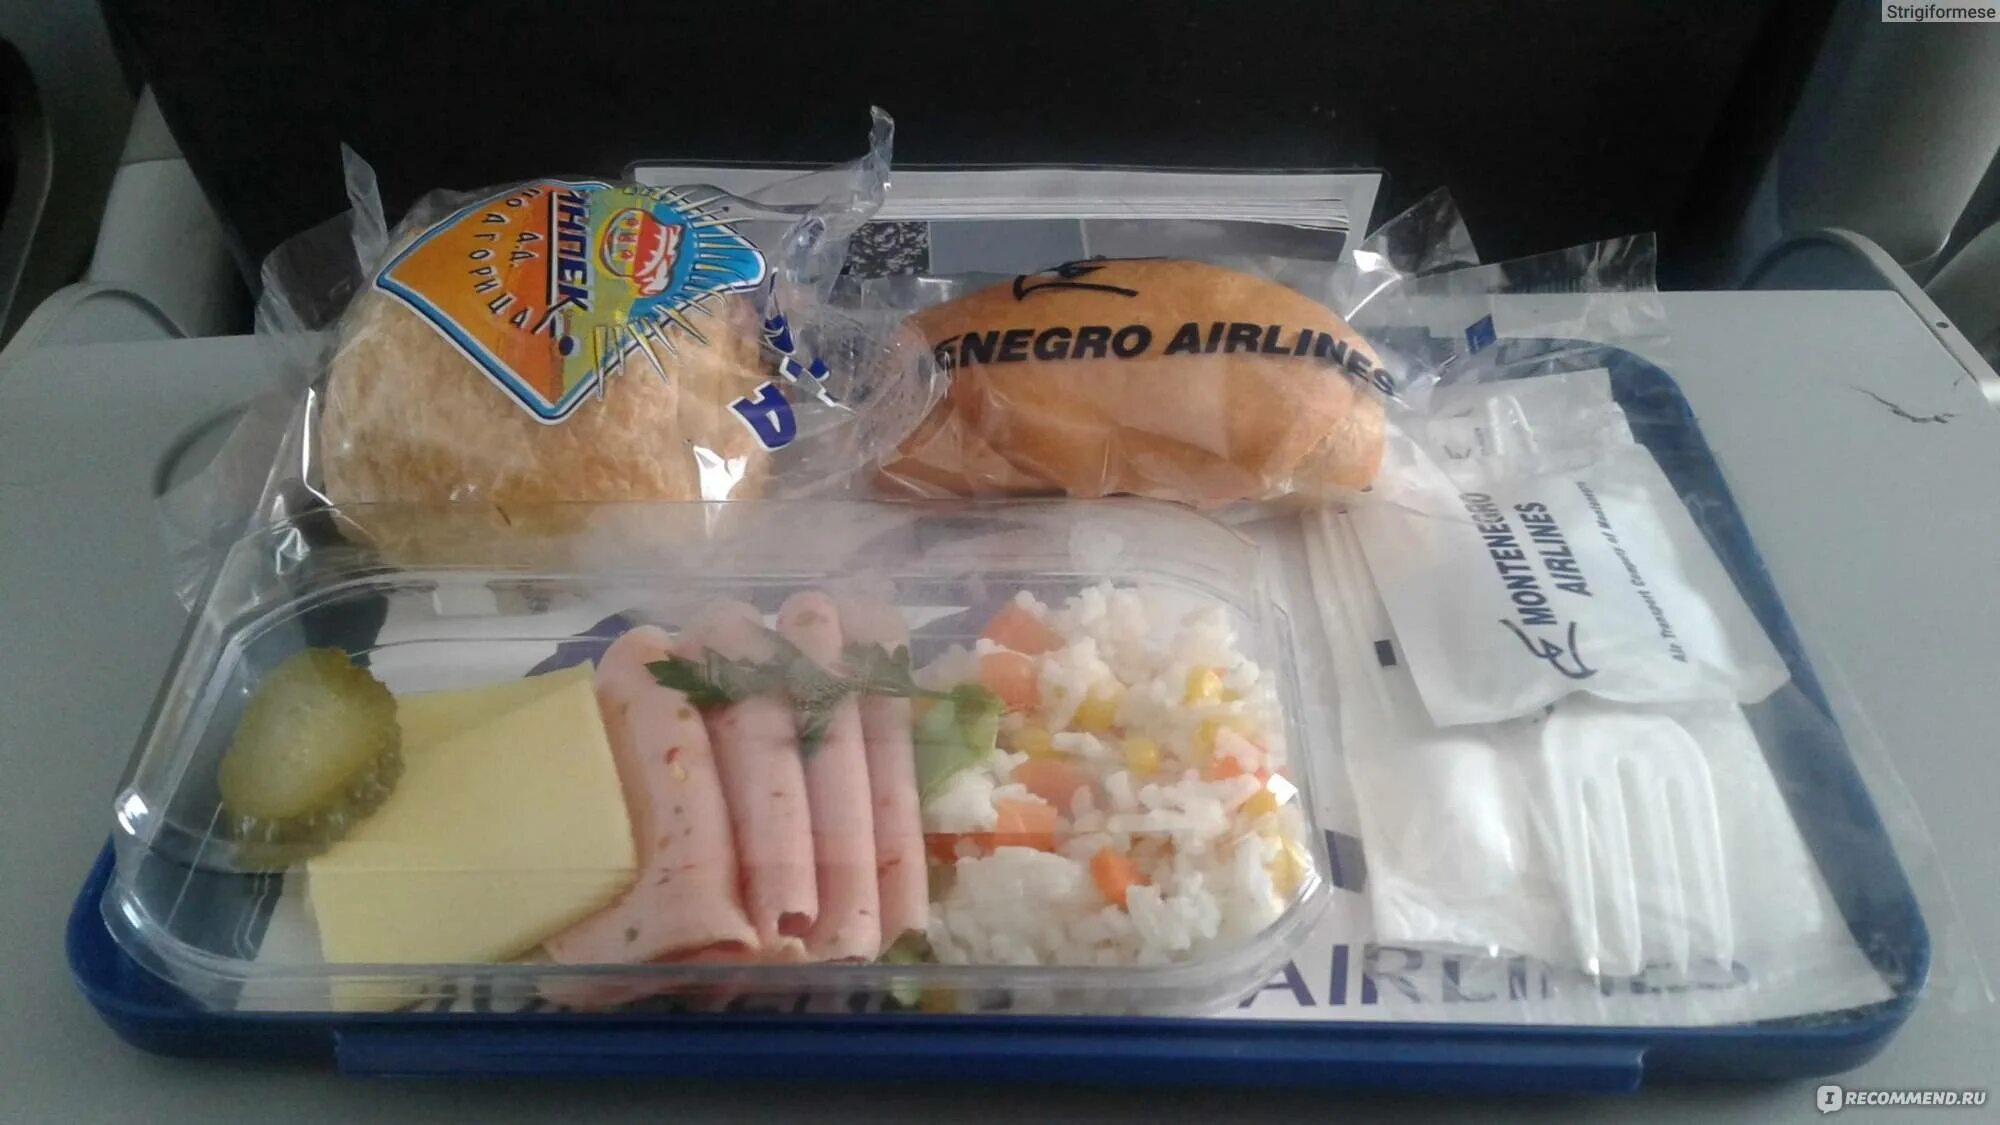 Победа можно ли еду. Еда в ручной клади в самолете. Еда в самолете упаковка. Еда в самолете победа. Авиакомпания победа еда в самолете.